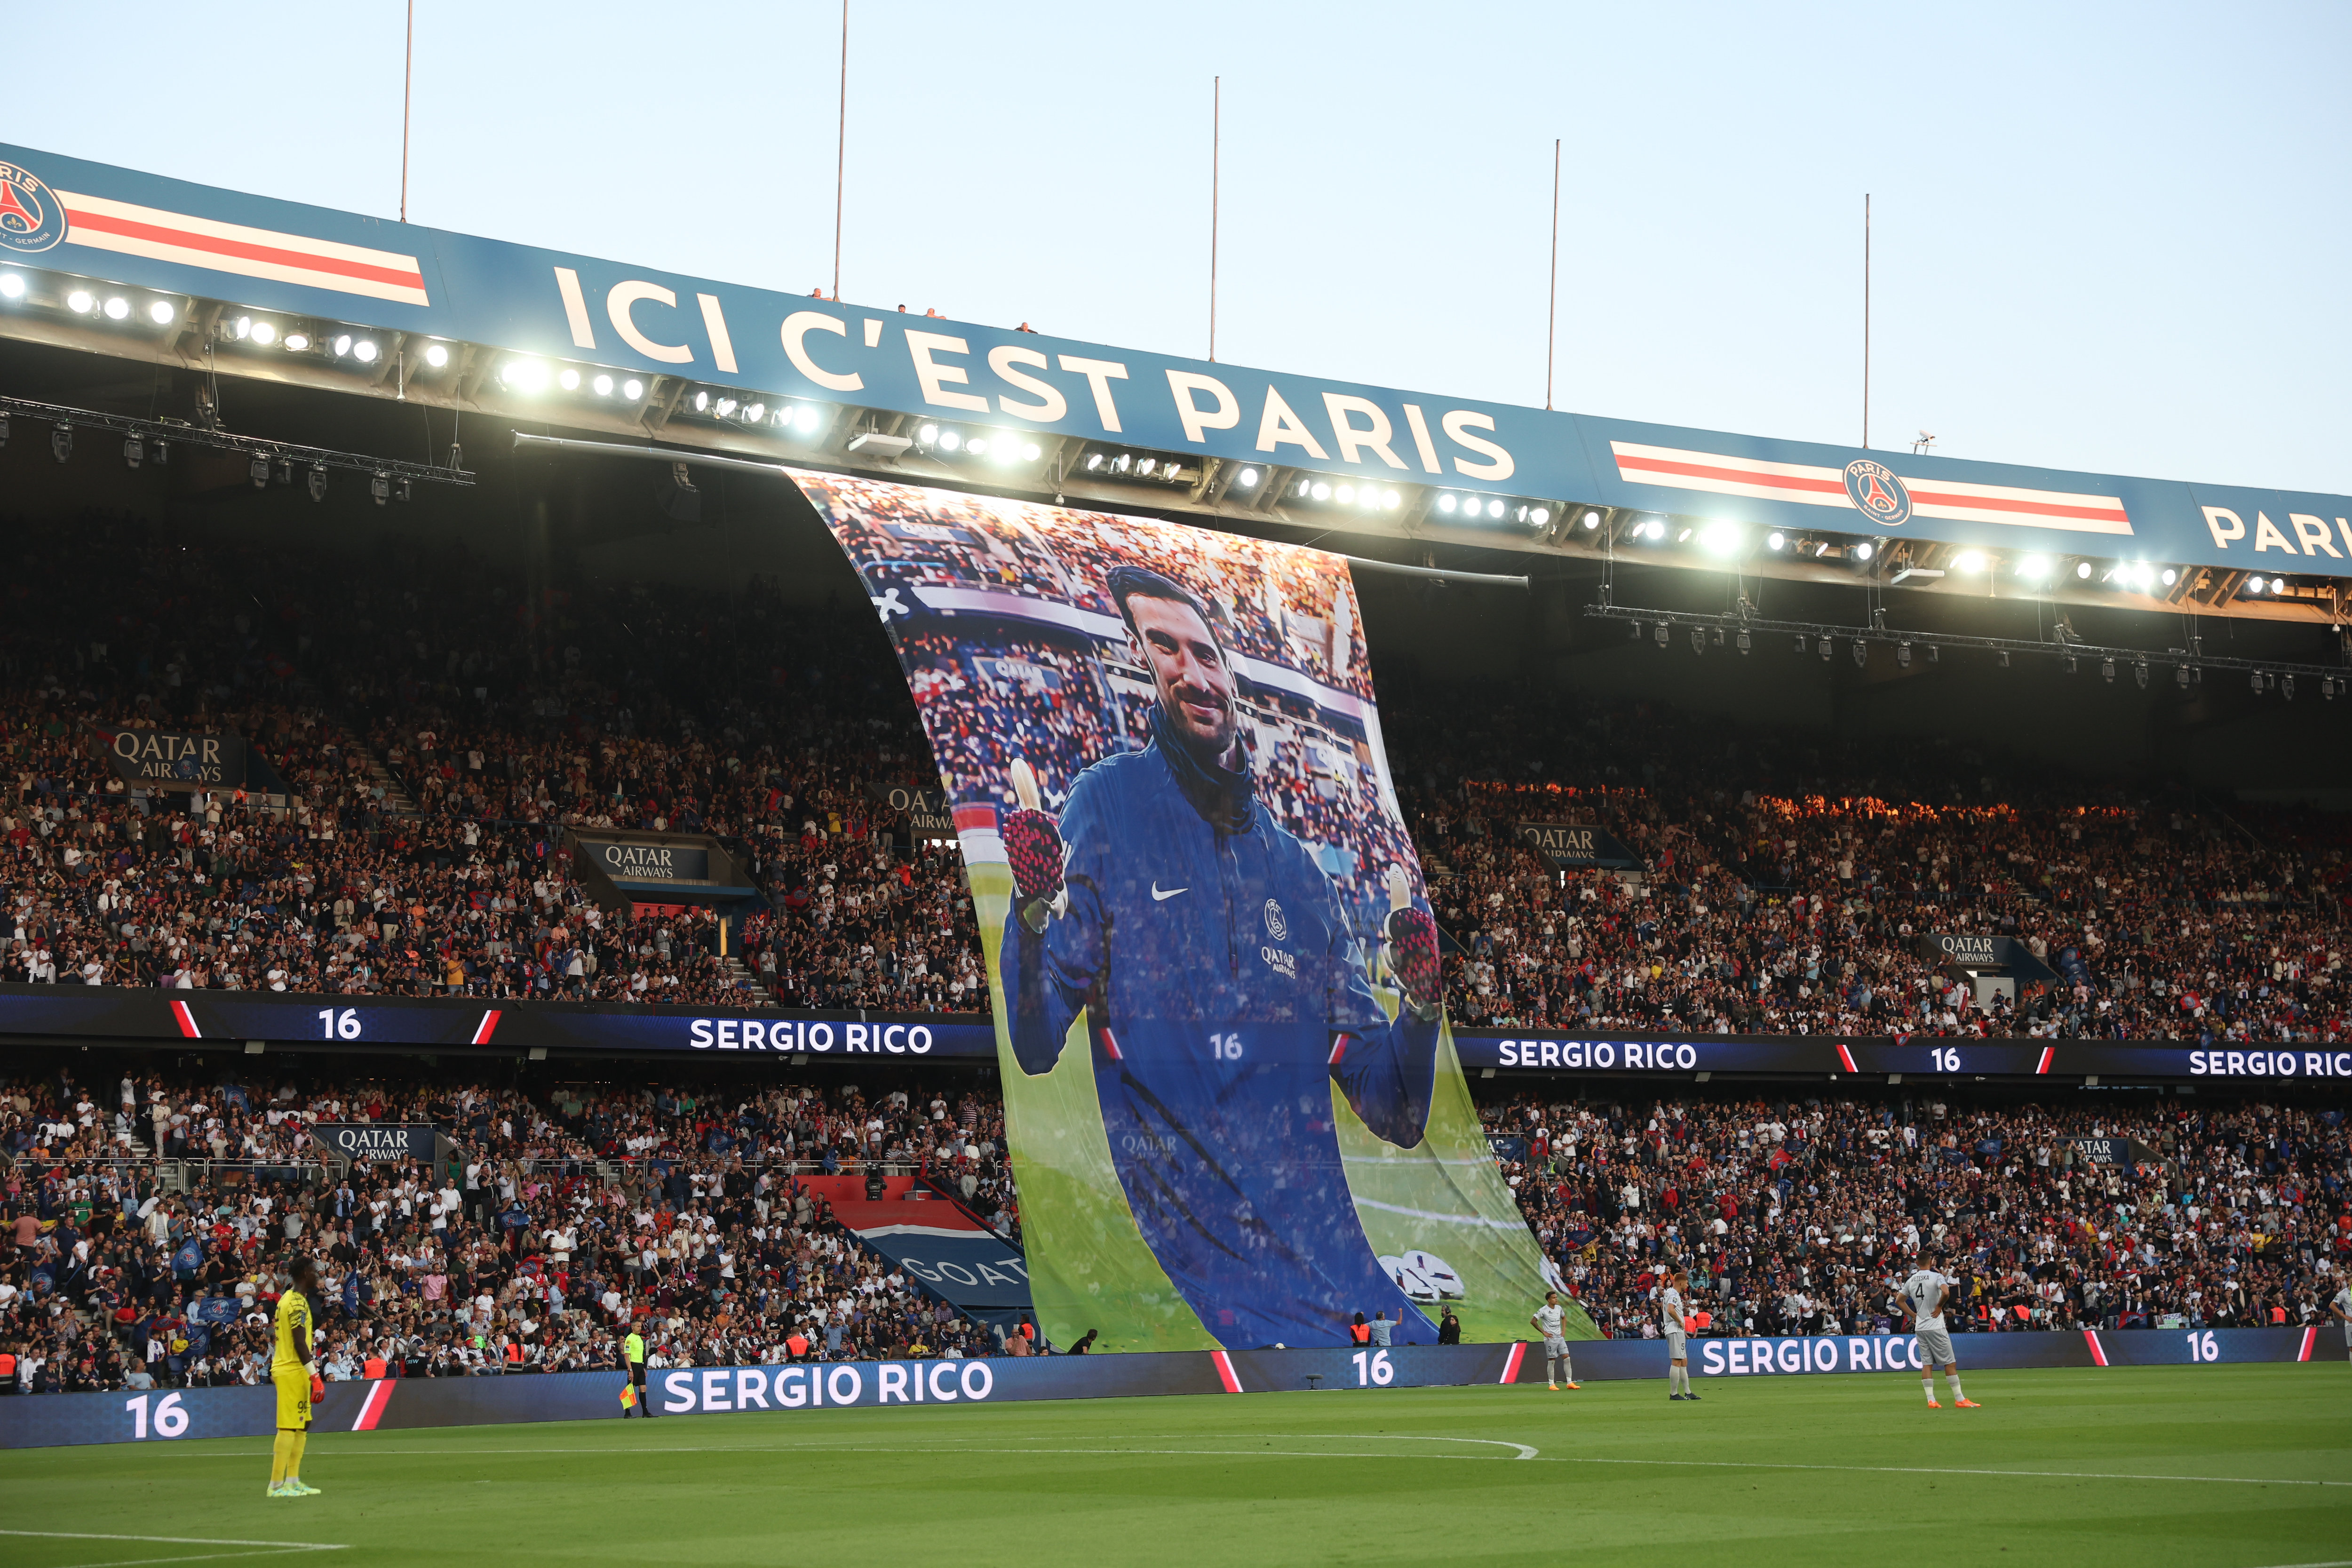 Le public du Parc des Princes a rendu hommage à Sergio Rico samedi lors du match contre Clermont. LP/Arnaud Journois